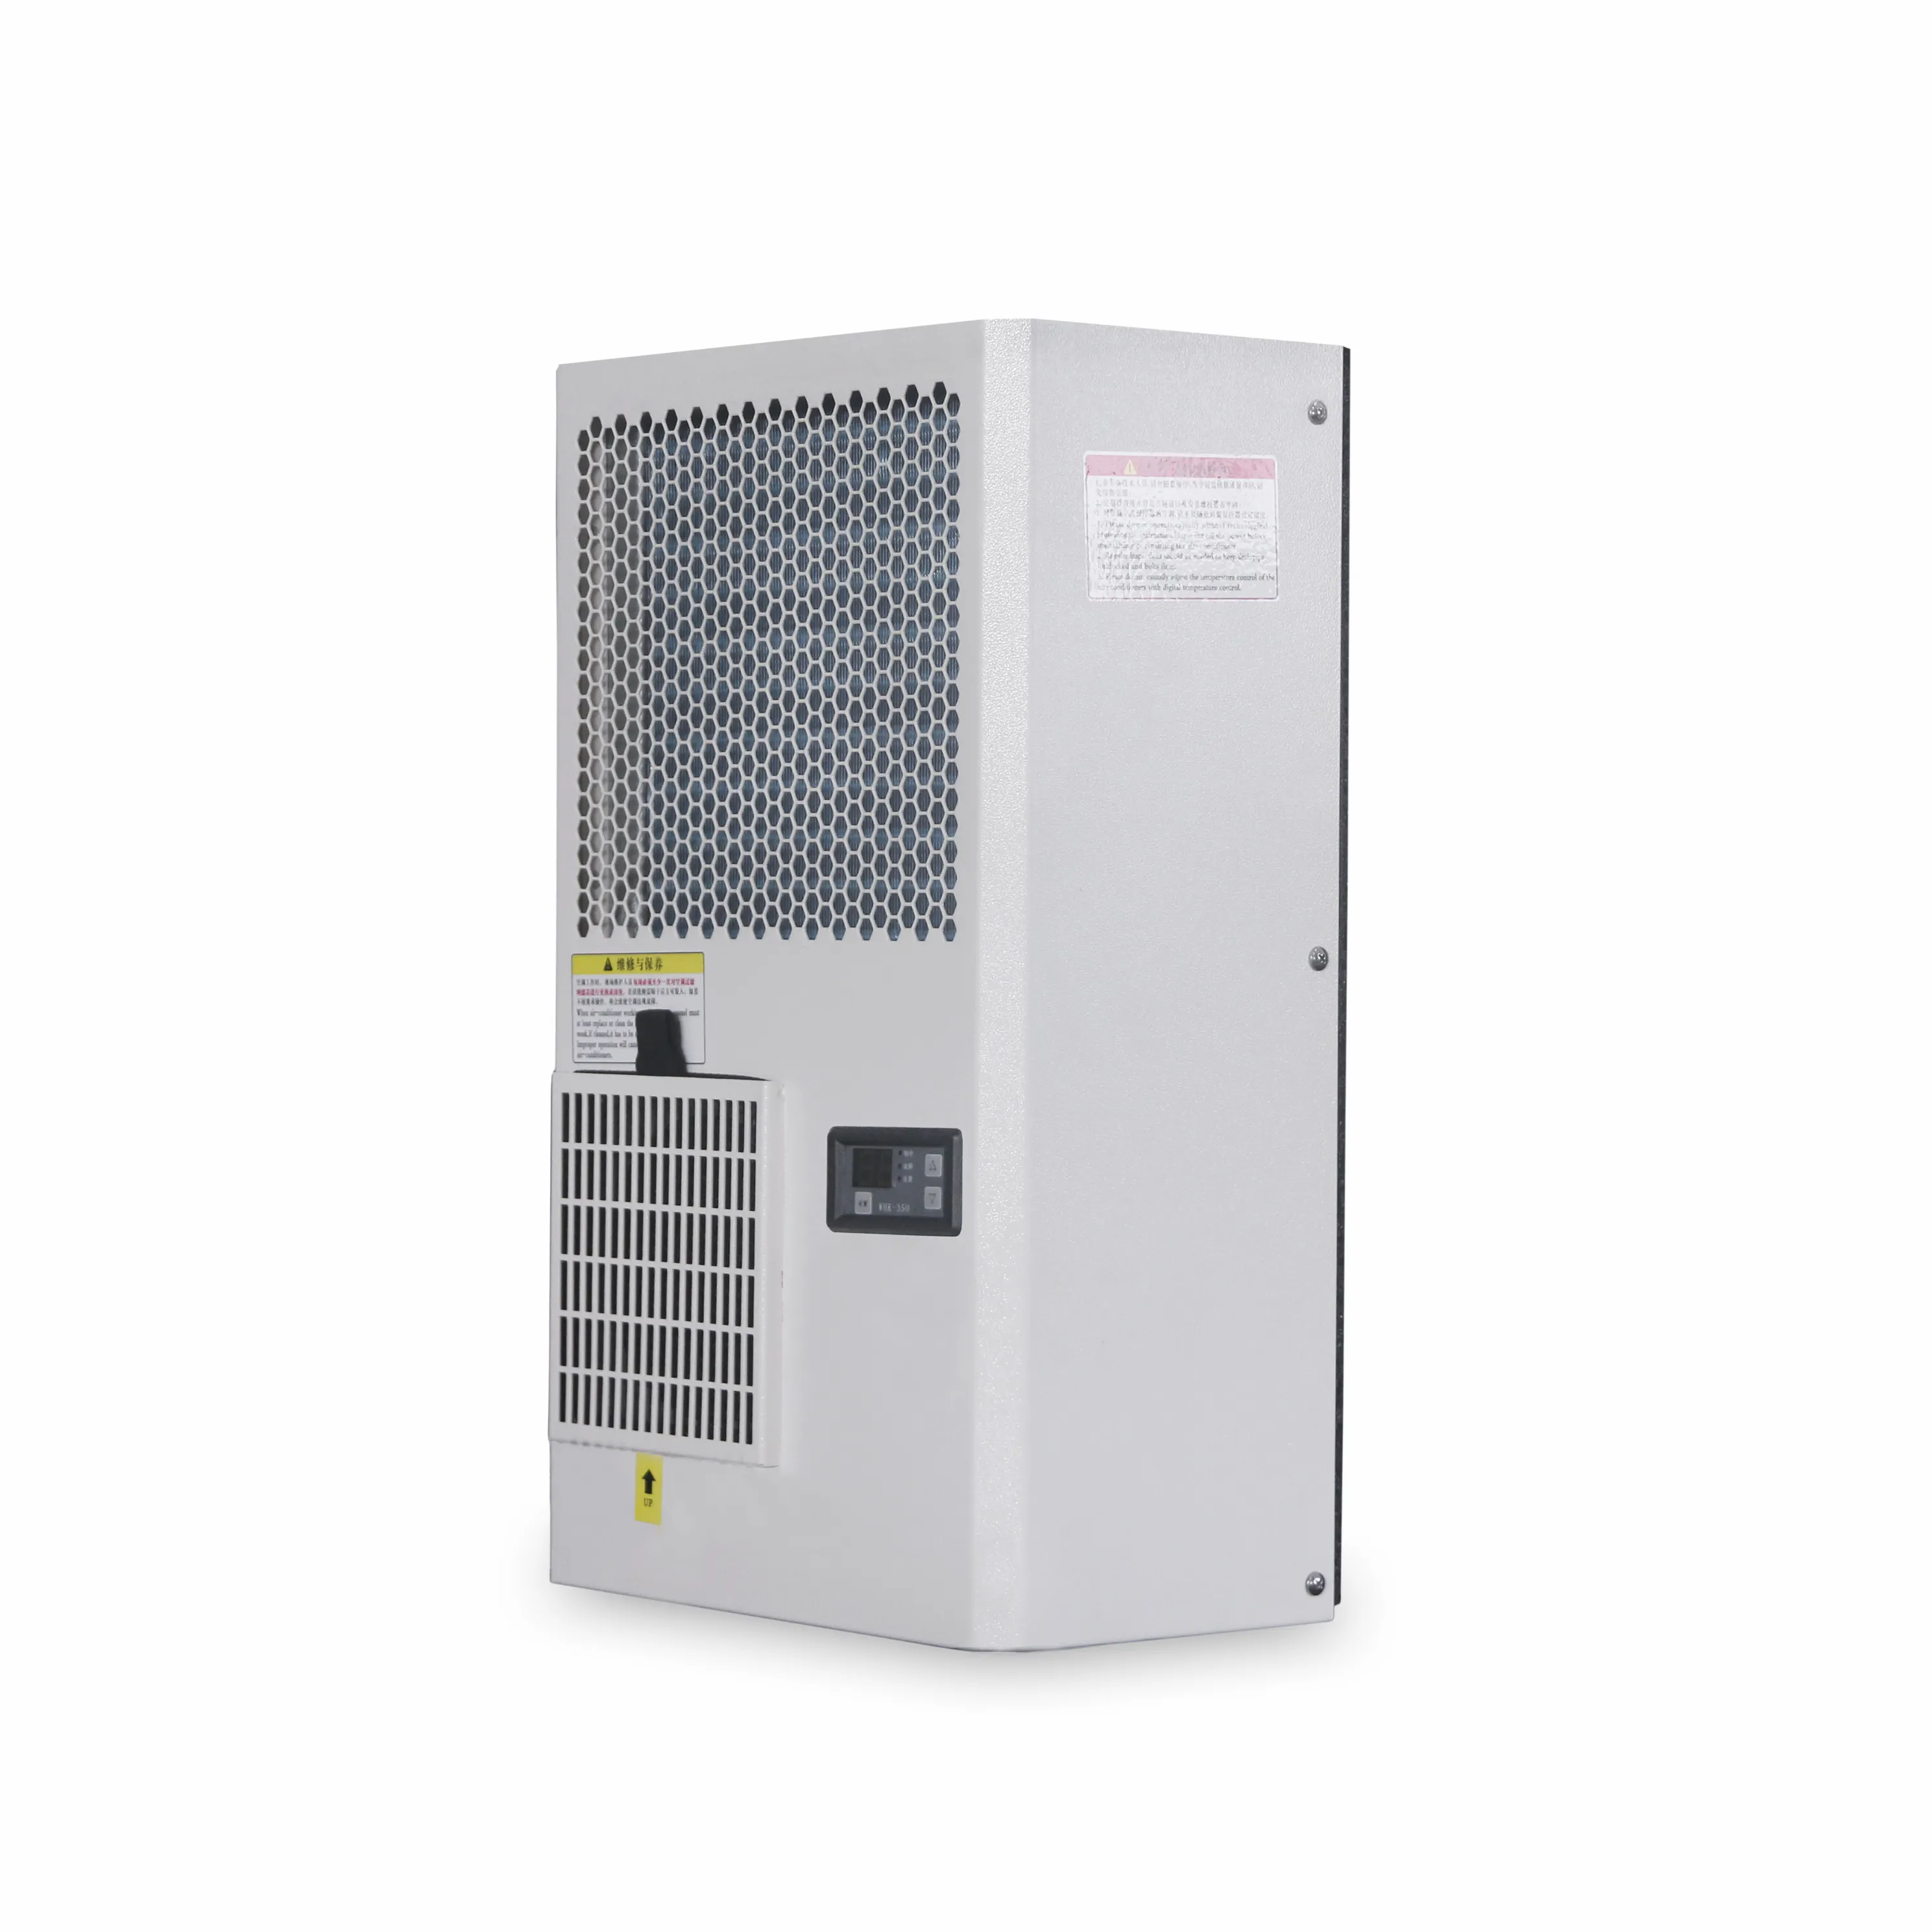 Winhee ar condicionado para armário elétrico, controle de fábrica 1000w sem condensador de água